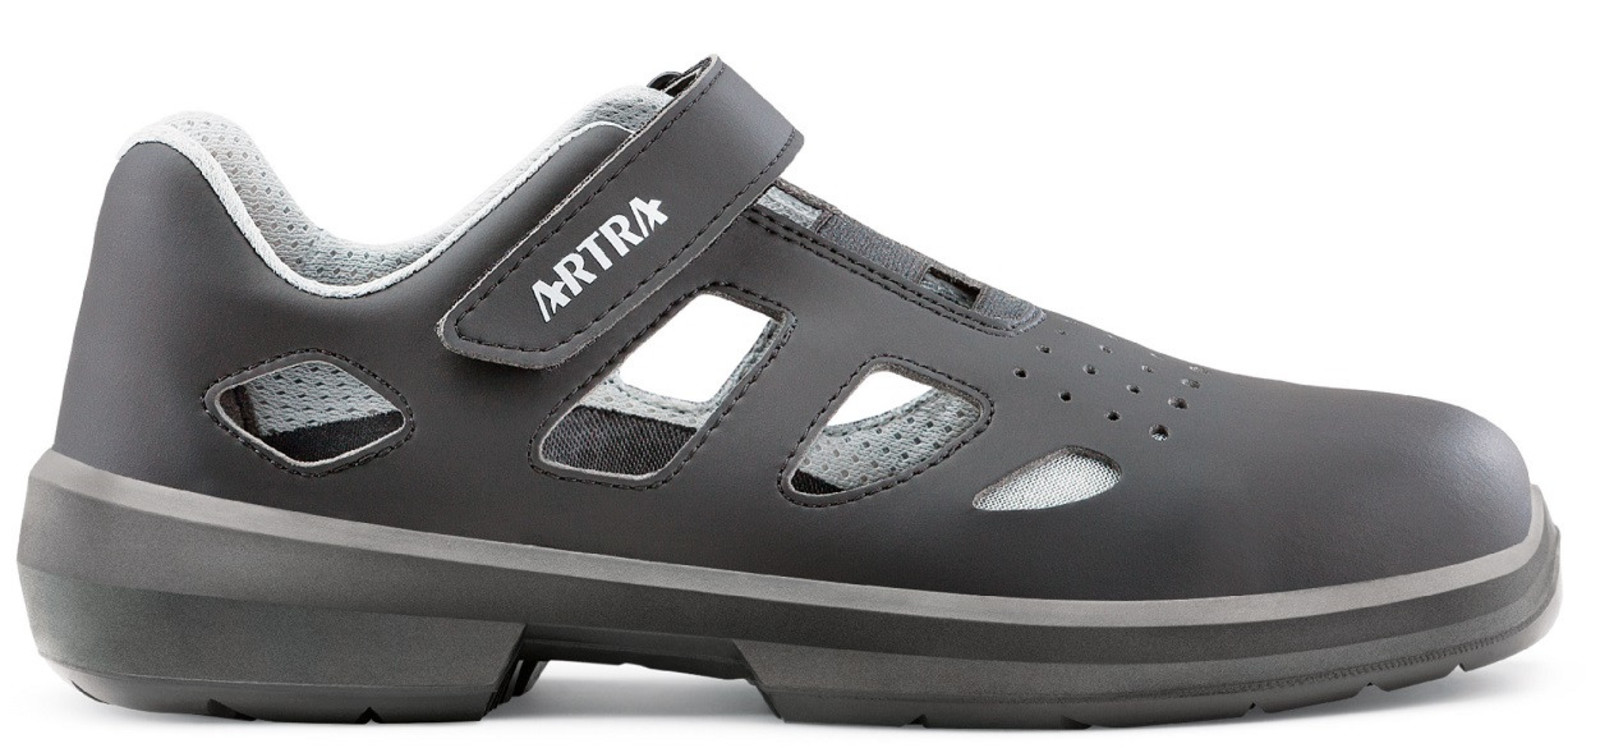 Bezpečnostné sandále Artra Ario 801 671460 S1P - veľkosť: 47, farba: čierna